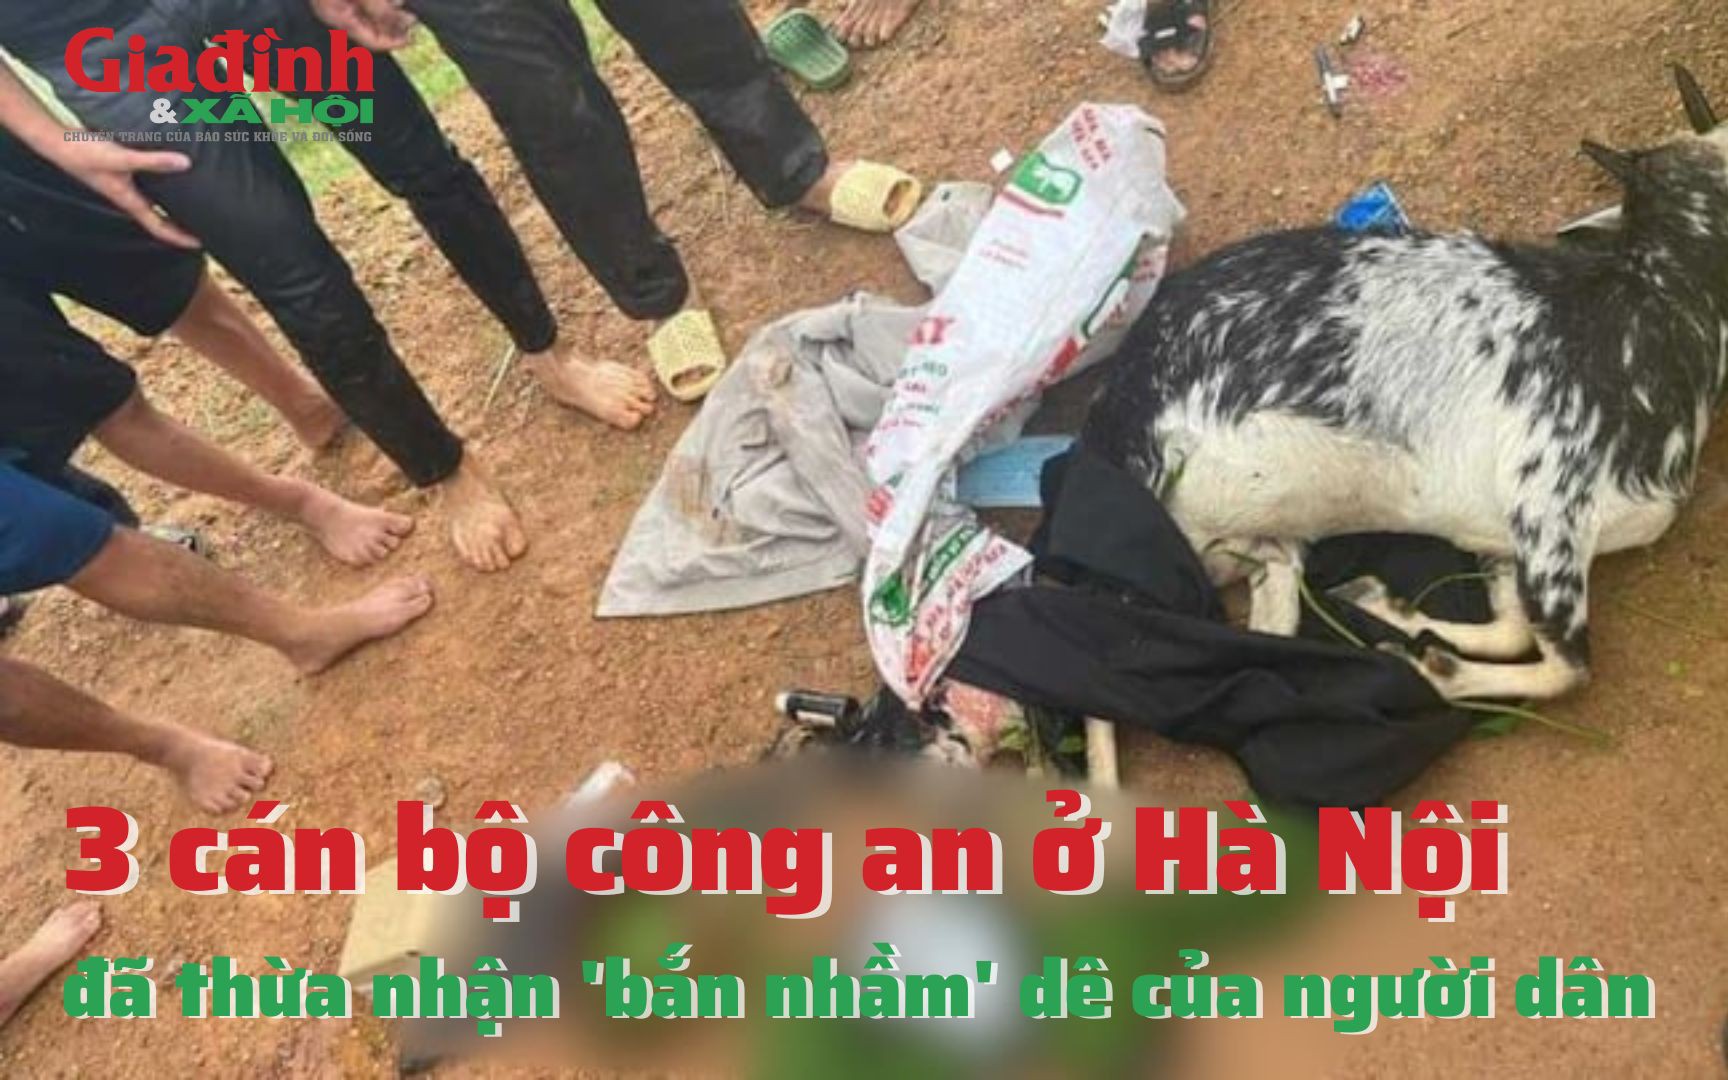 3 cán bộ công an ở Hà Nội đã thừa nhận "bắn nhầm" dê của người dân